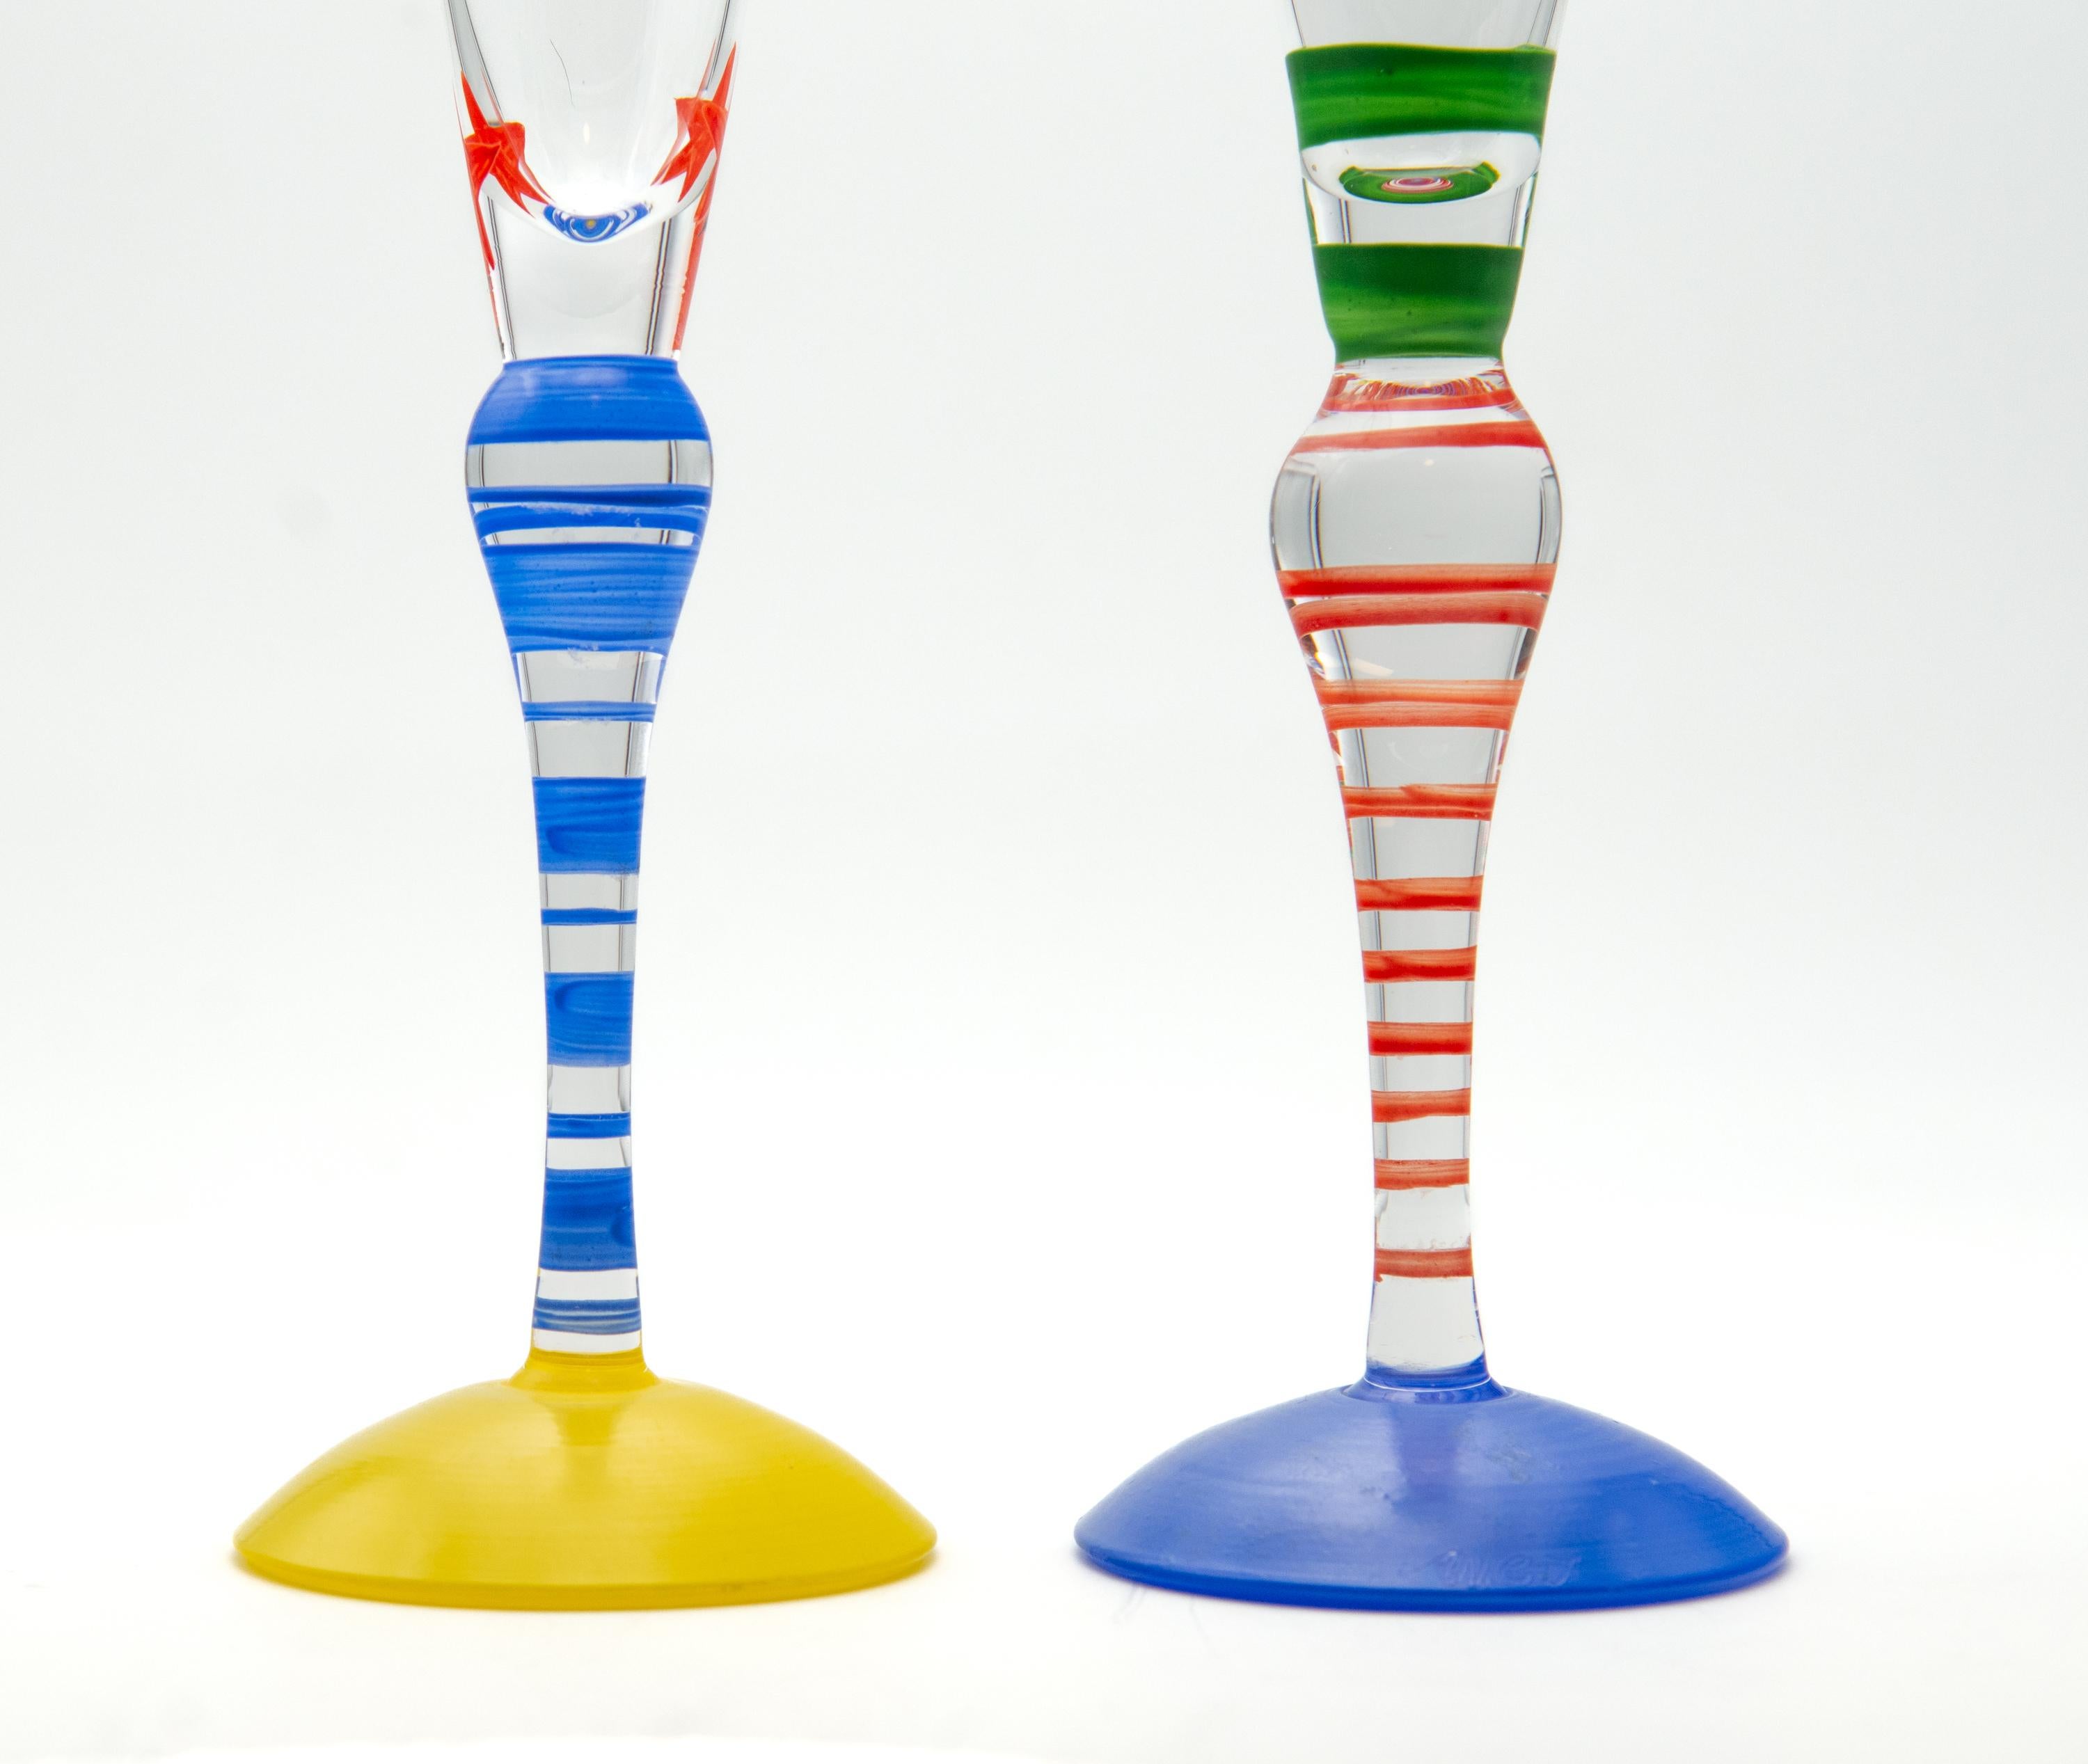 Zwei Sektflöten aus Orrefors-Kristall der Serie Clown, 1992 von Anne Nilsson entworfen und von der Künstlerin handkoloriert. Unterschrieben.

Lieferung auf dem britischen Festland inbegriffen.

Sie sind in ausgezeichnetem Zustand, leichter Fleck auf